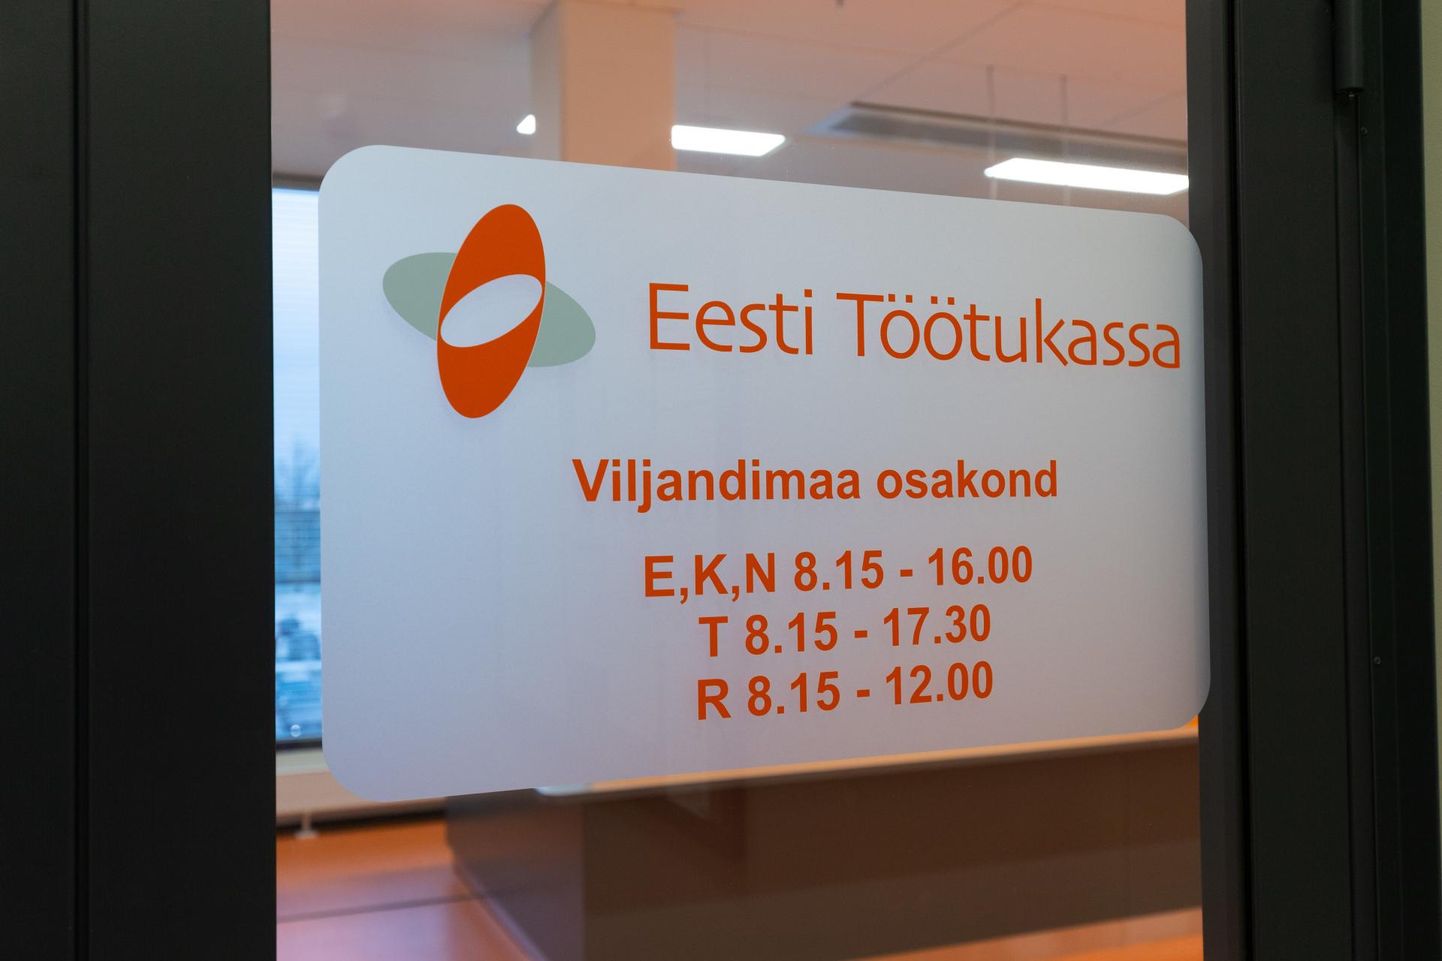 Töötukassa andmete järgi oli pühapäeval, 9. oktoobril Eestis 50 831 registreeritud töötut. Sellega tõusis Eesti registreeritud töötute arv suuremaks kui suvel, 30. juunil saavutatud koroonakriisi senine tipp, milleks oli 50 751 inimest.